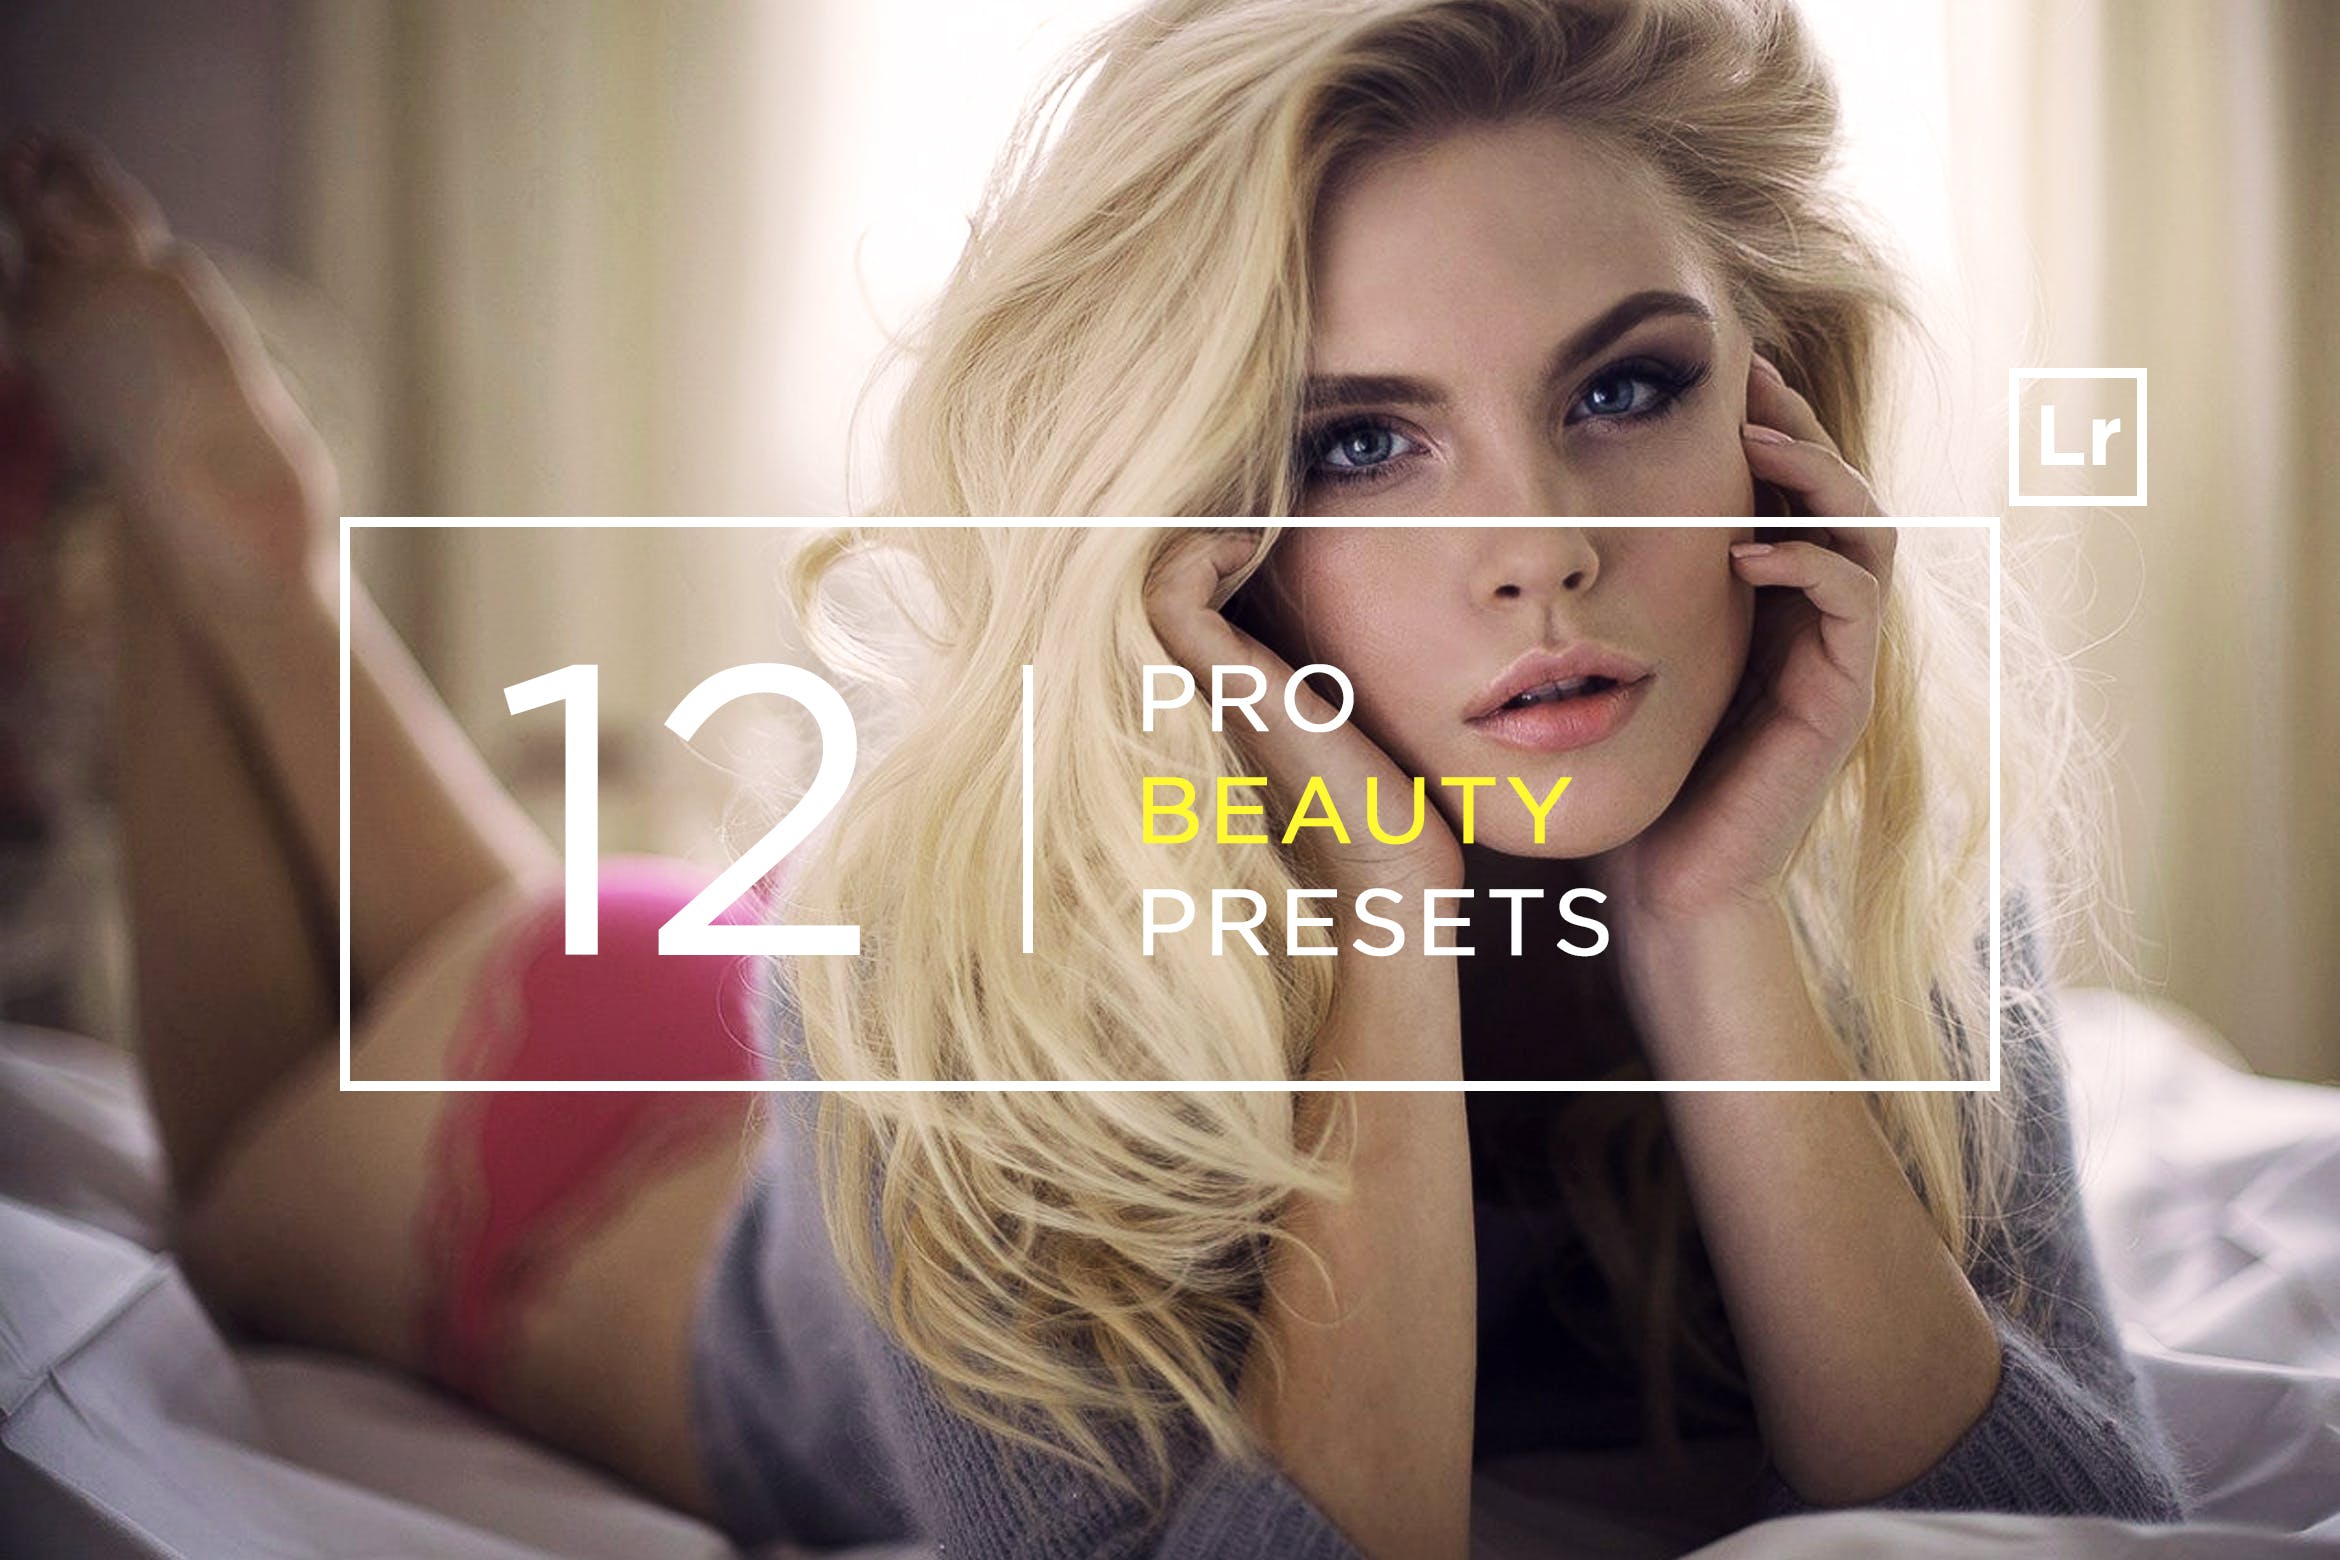 12款超级美颜调色滤镜非凡图库精选LR预设 12 Pro Beauty Lightroom Presets插图